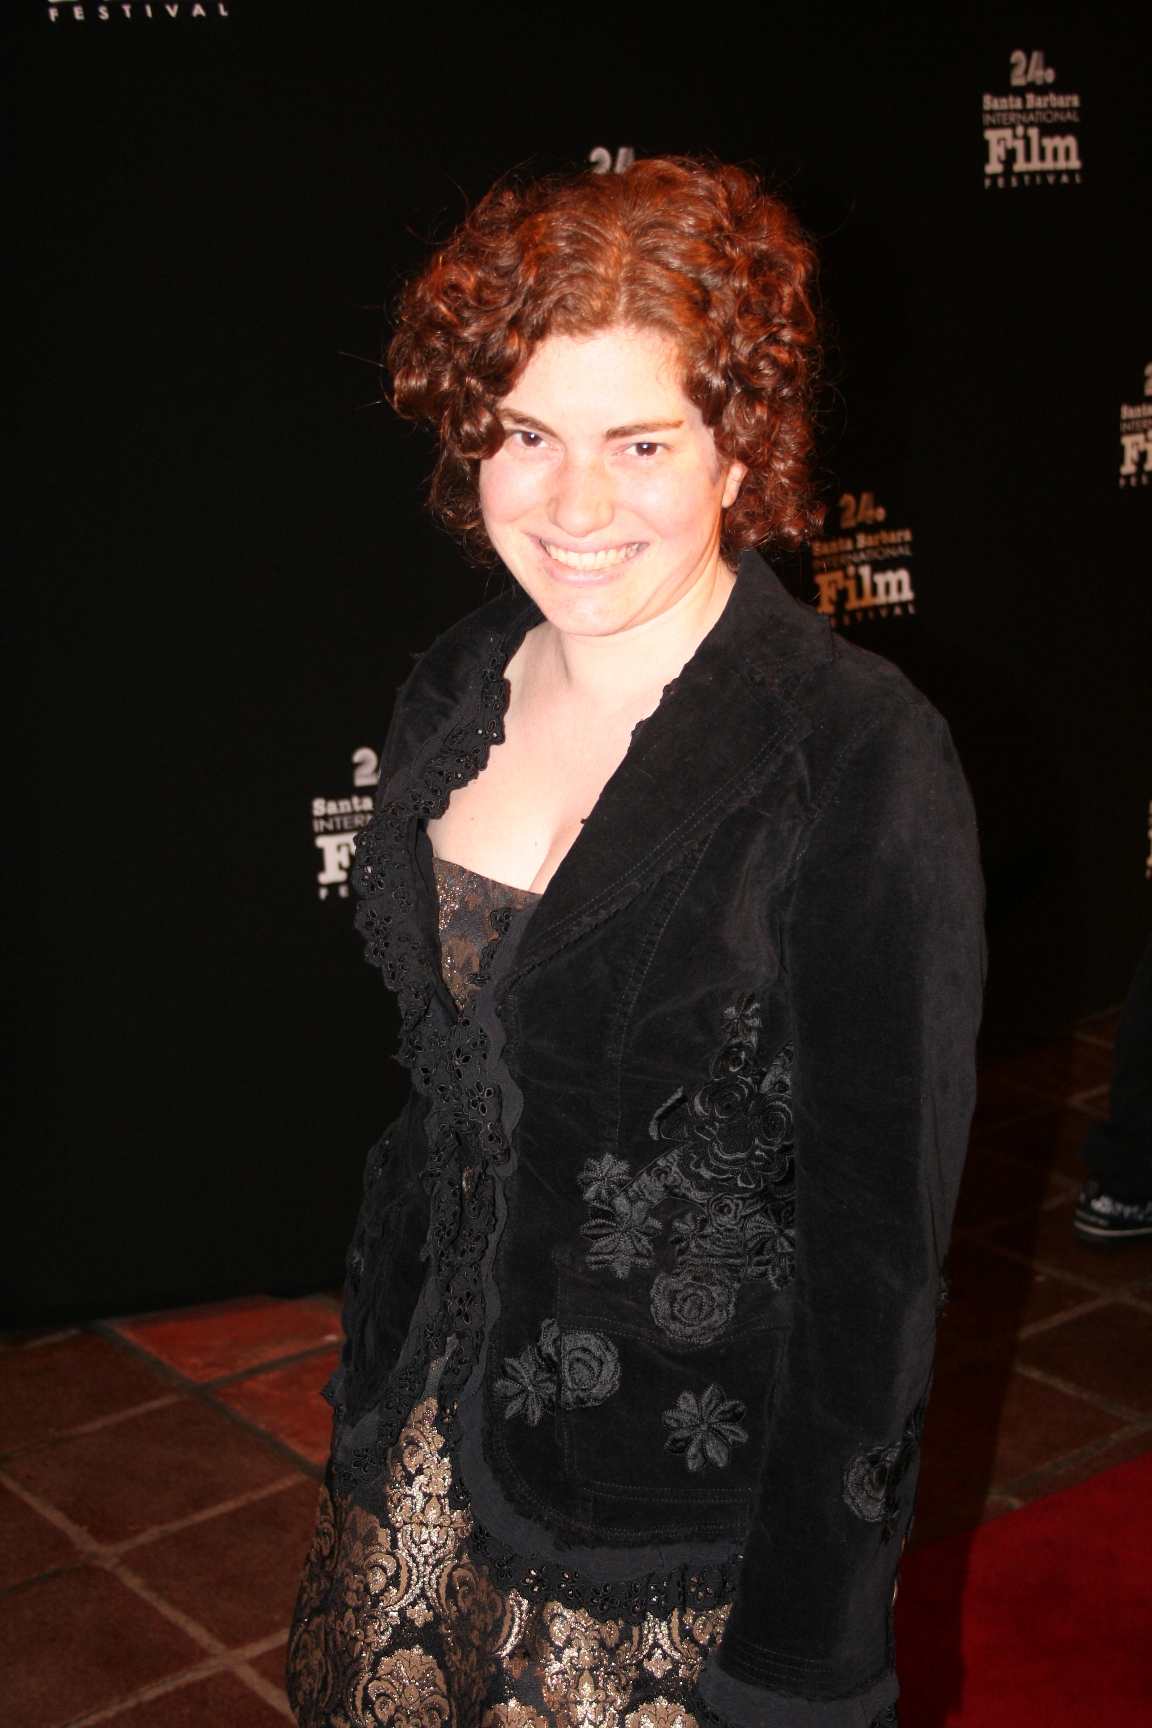 Alexia Anastasio at the Santa Barbara Film Festival 2009